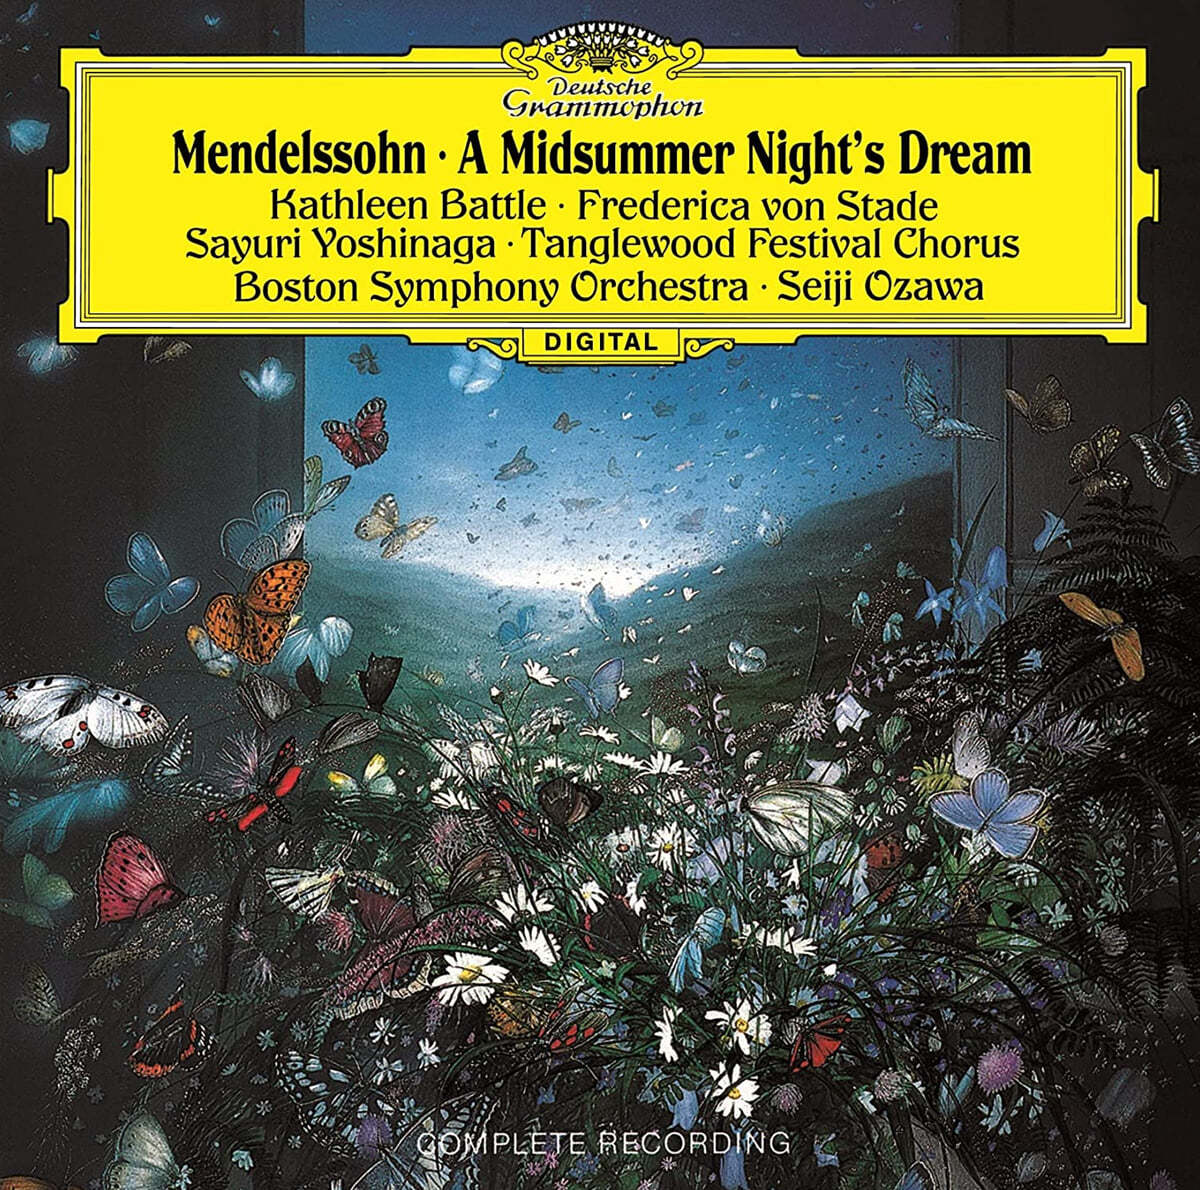 Seiji Ozawa 멘델스존: 한여름밤의 꿈 (Mendelssohn: A Midsummer Night's Dream)